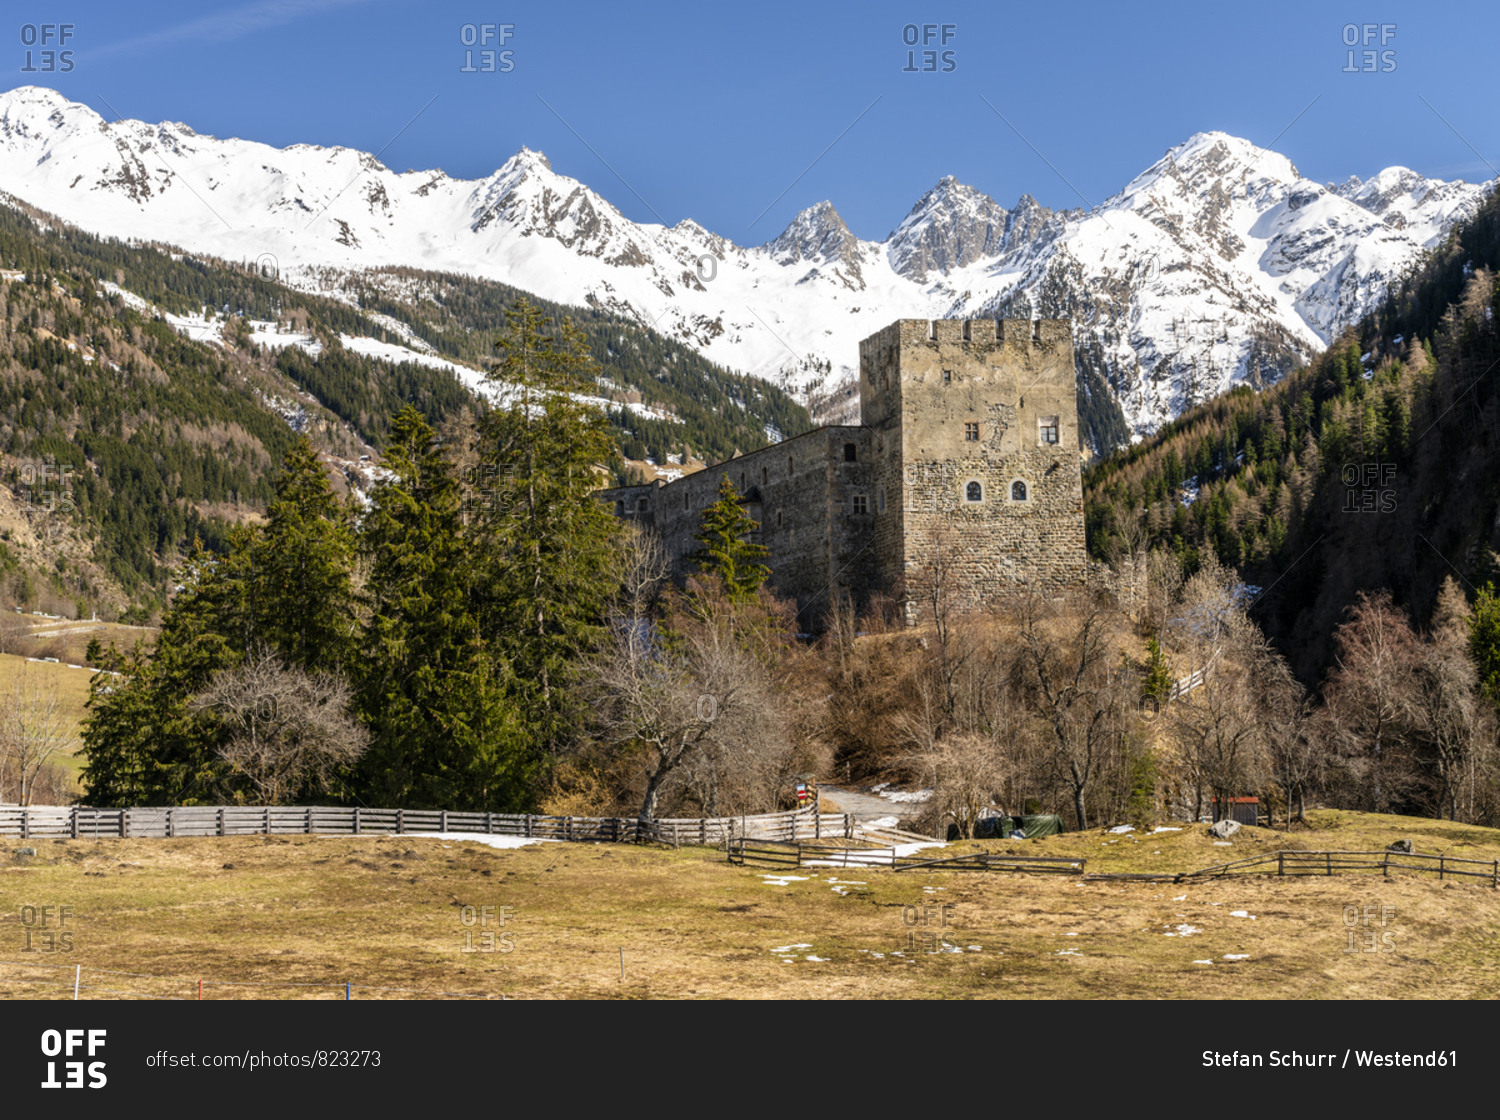 Austria- Tyrol- Oetztal Alps- Kauner Valley- Berneck Castle